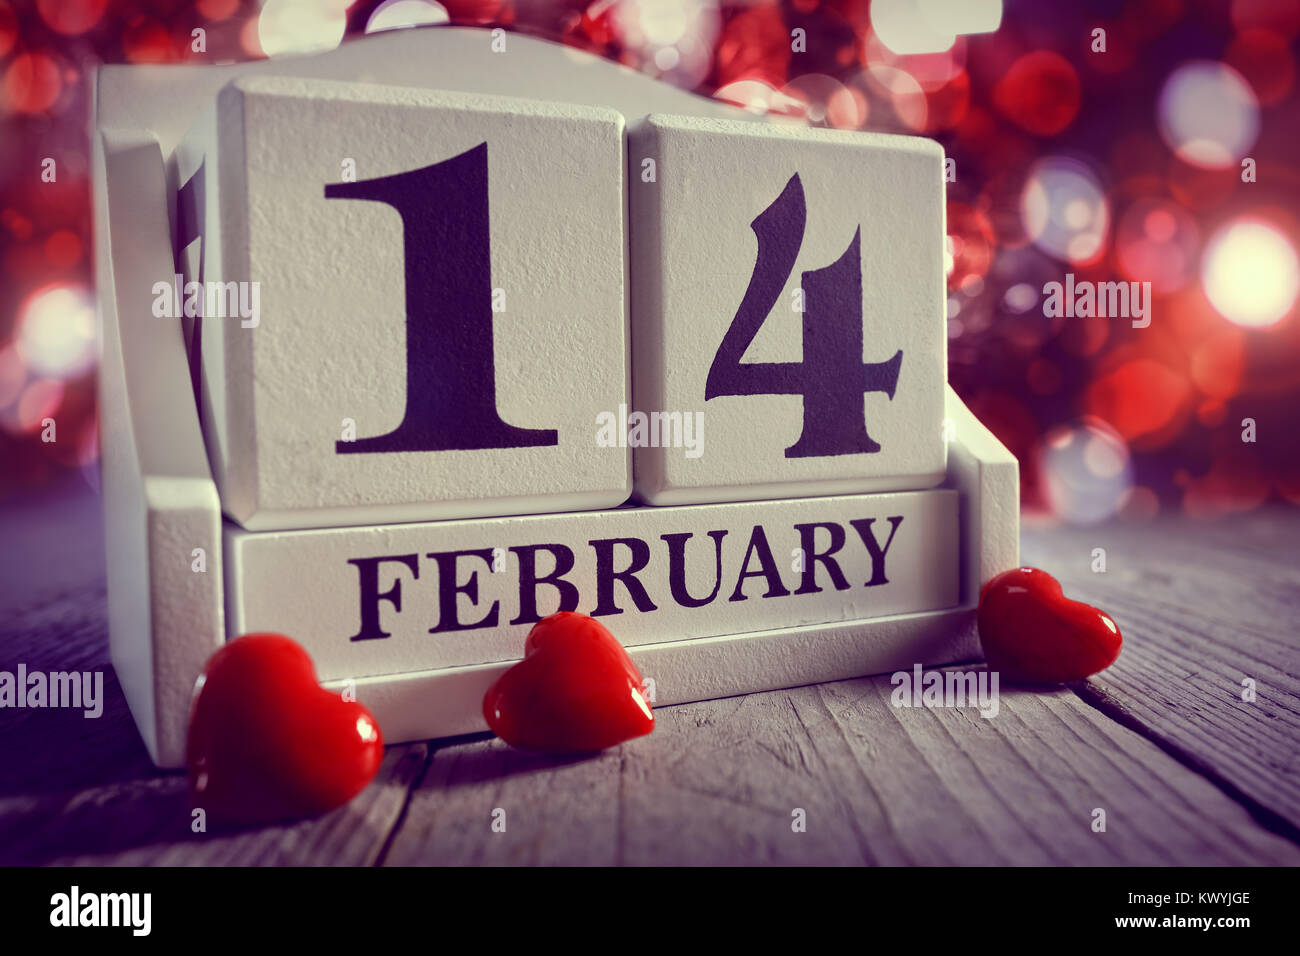 Valentines Day 14 février calendrier avec coeur rouge Banque D'Images